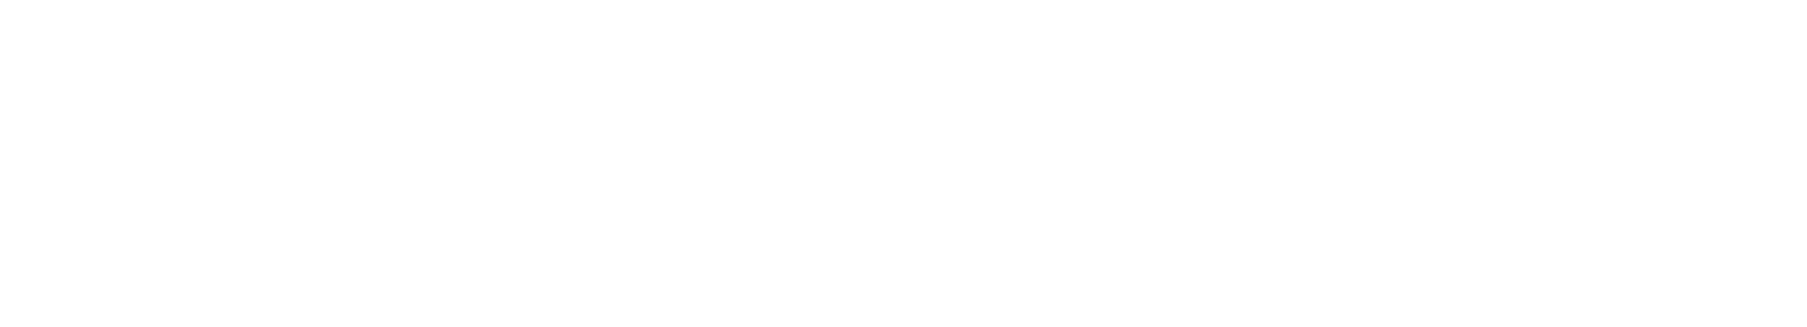 vFUN-logo-horizontal-white@2x